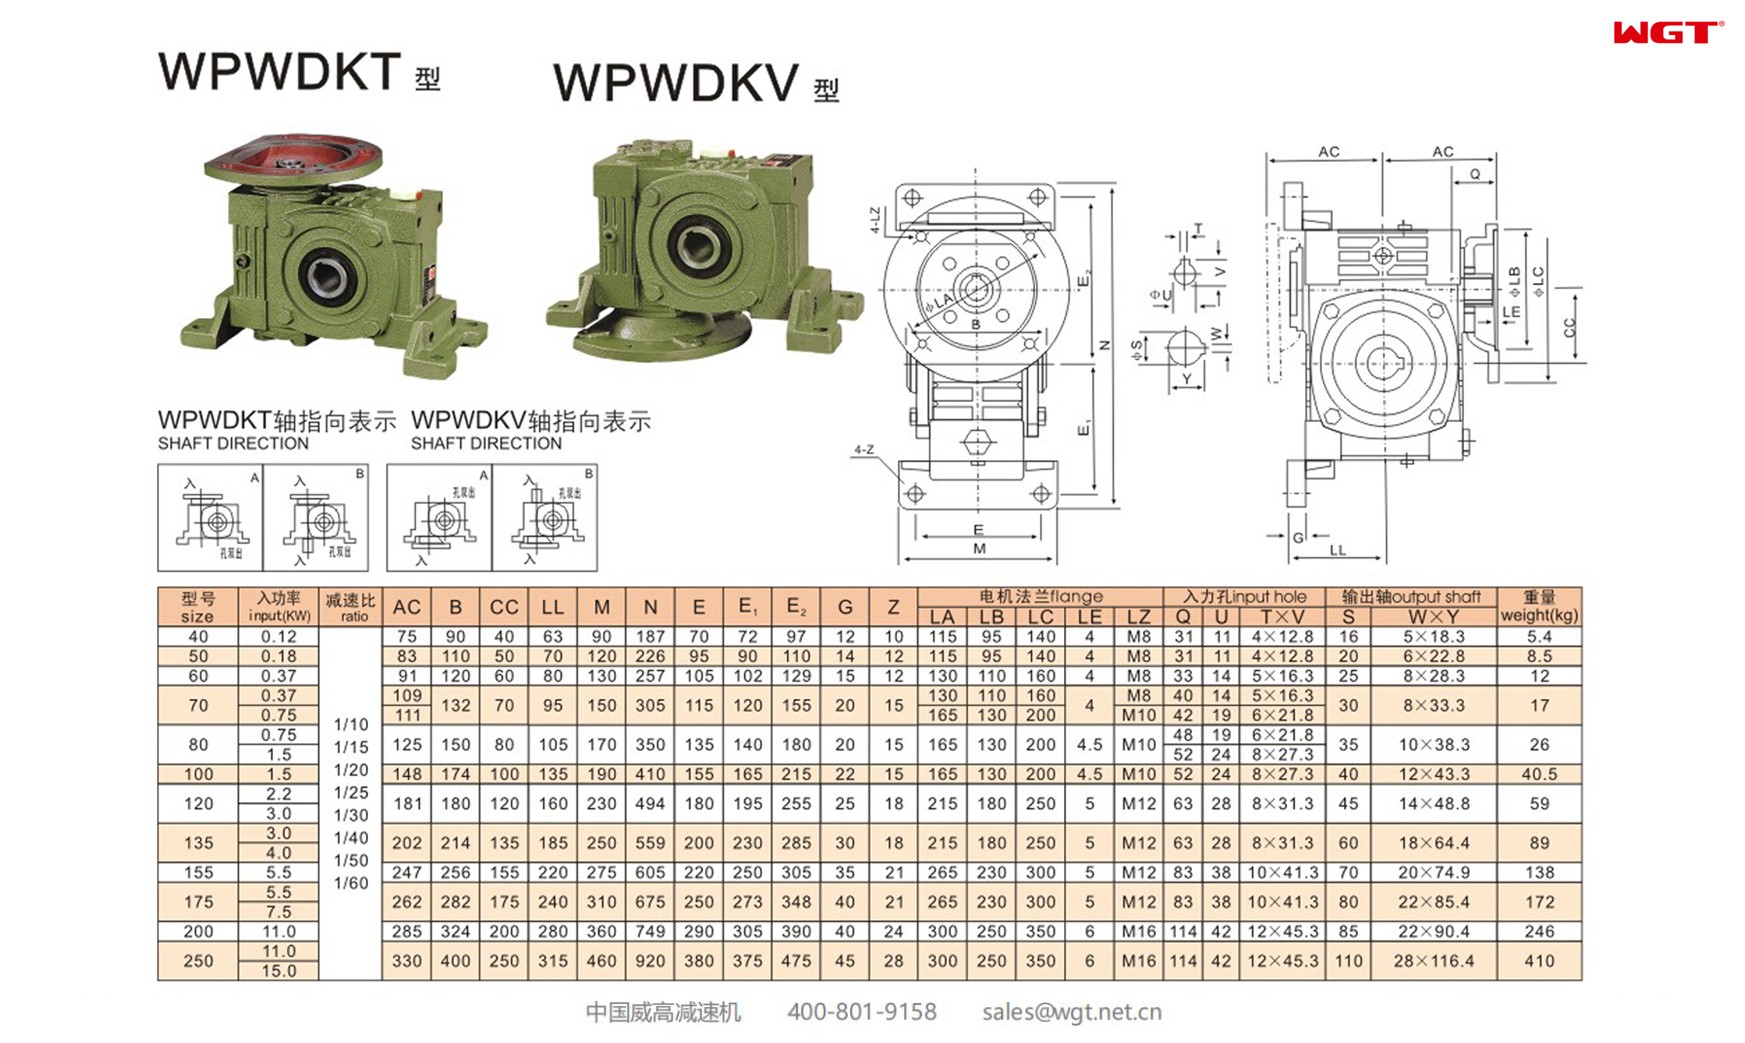 WPWDKV120 worm gear reducer universal speed reducer 